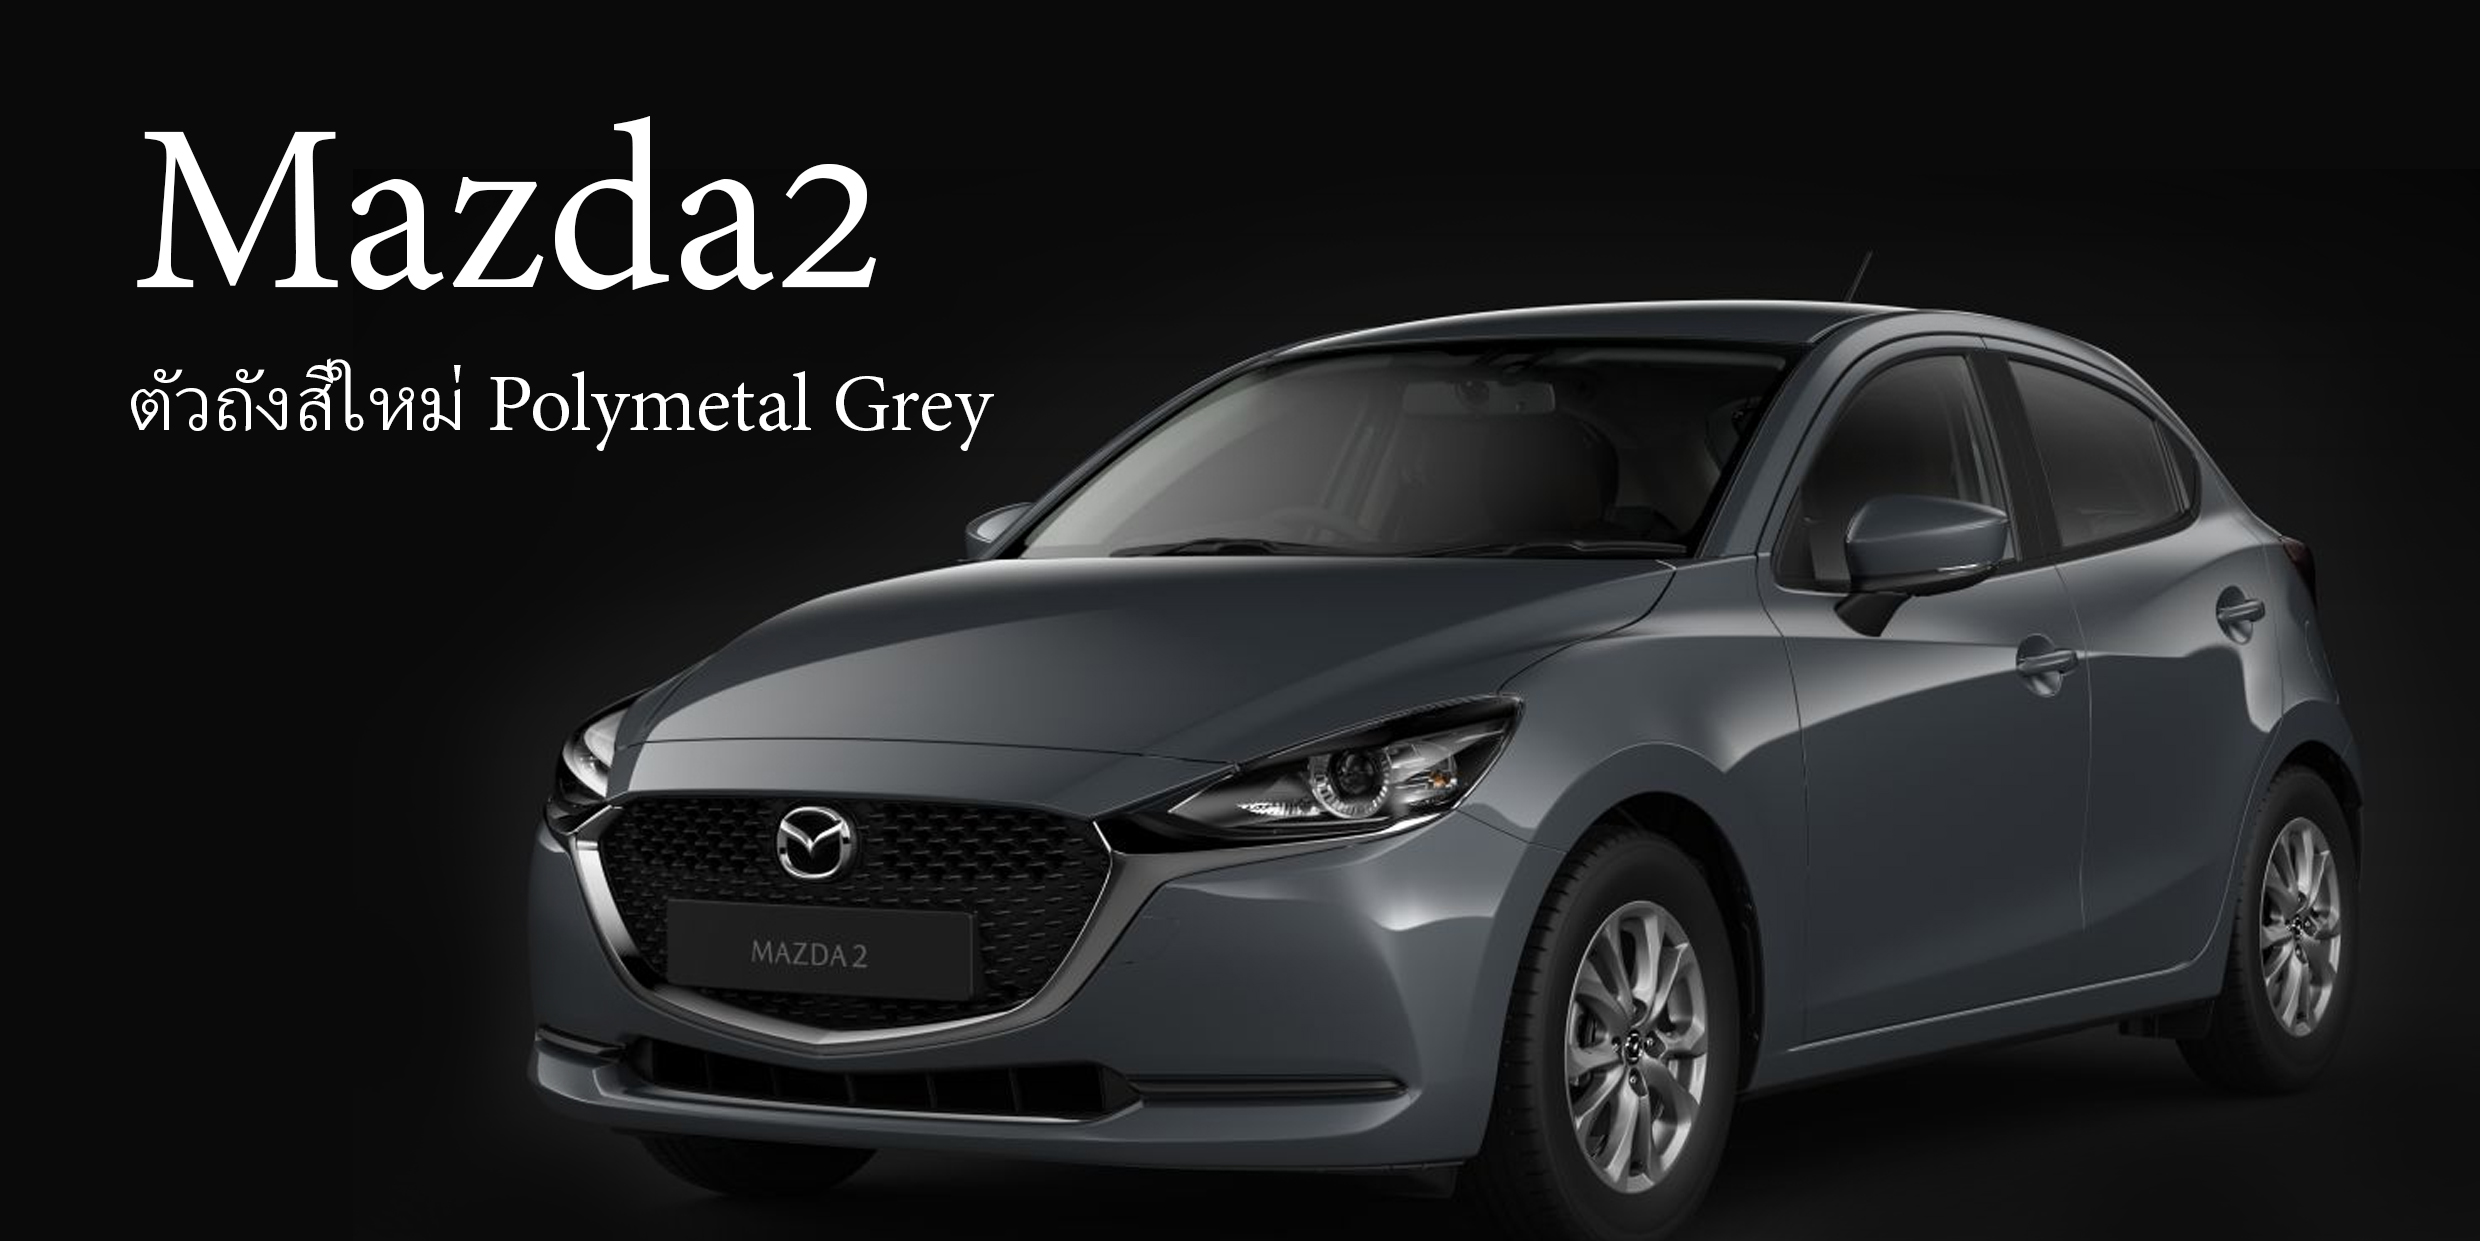 Mazda2 รุ่นปรับปรุง + ตัวถังสีใหม่ Polymetal Grey เปิดตัว 28 พ.ย.62